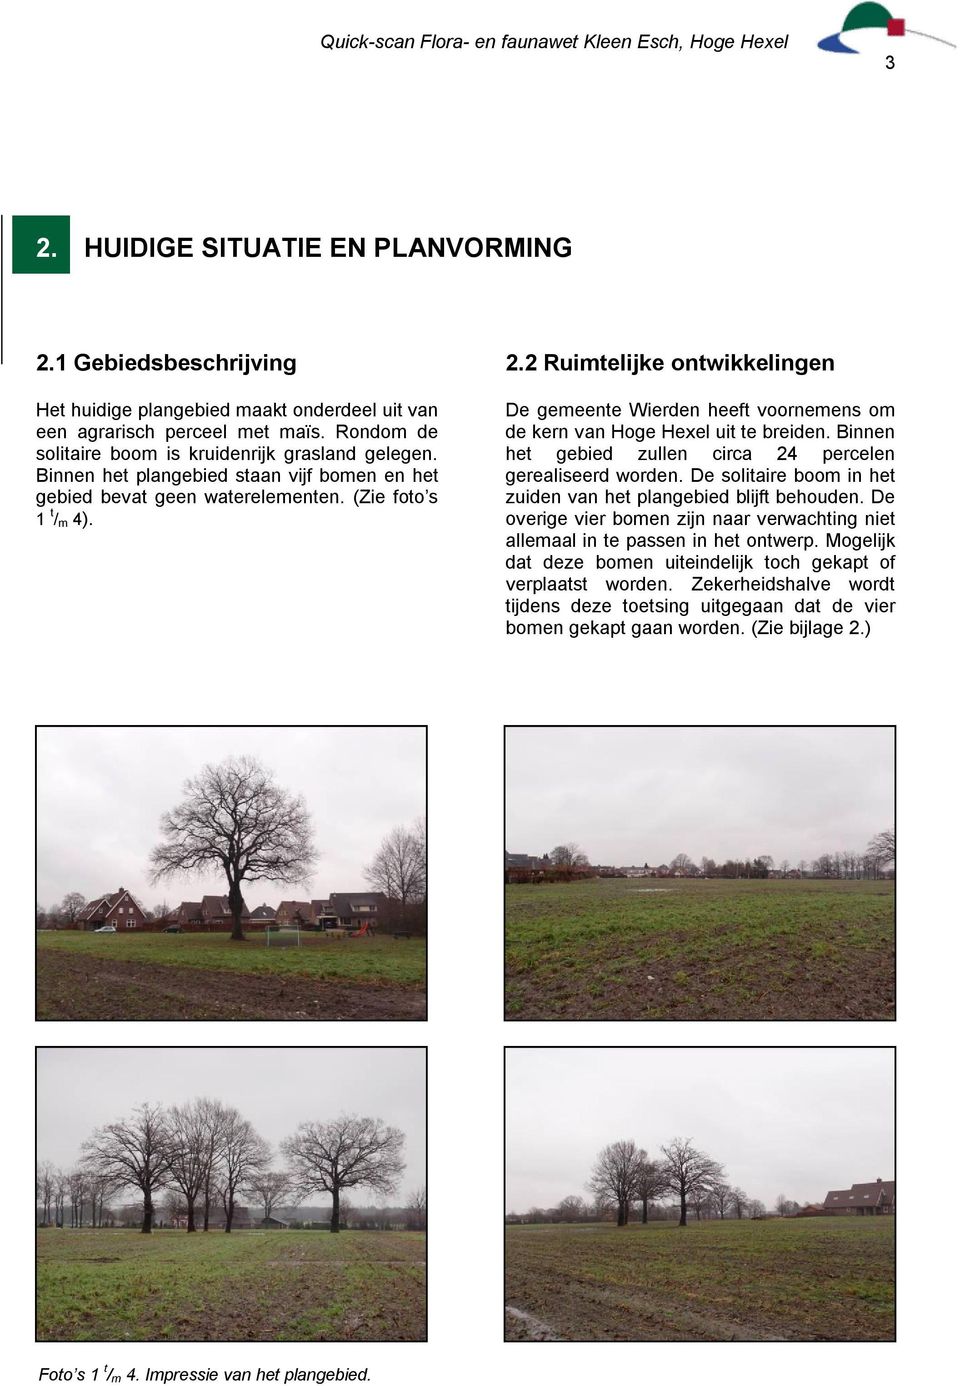 2 Ruimtelijke ontwikkelingen De gemeente Wierden heeft voornemens om de kern van Hoge Hexel uit te breiden. Binnen het gebied zullen circa 24 percelen gerealiseerd worden.